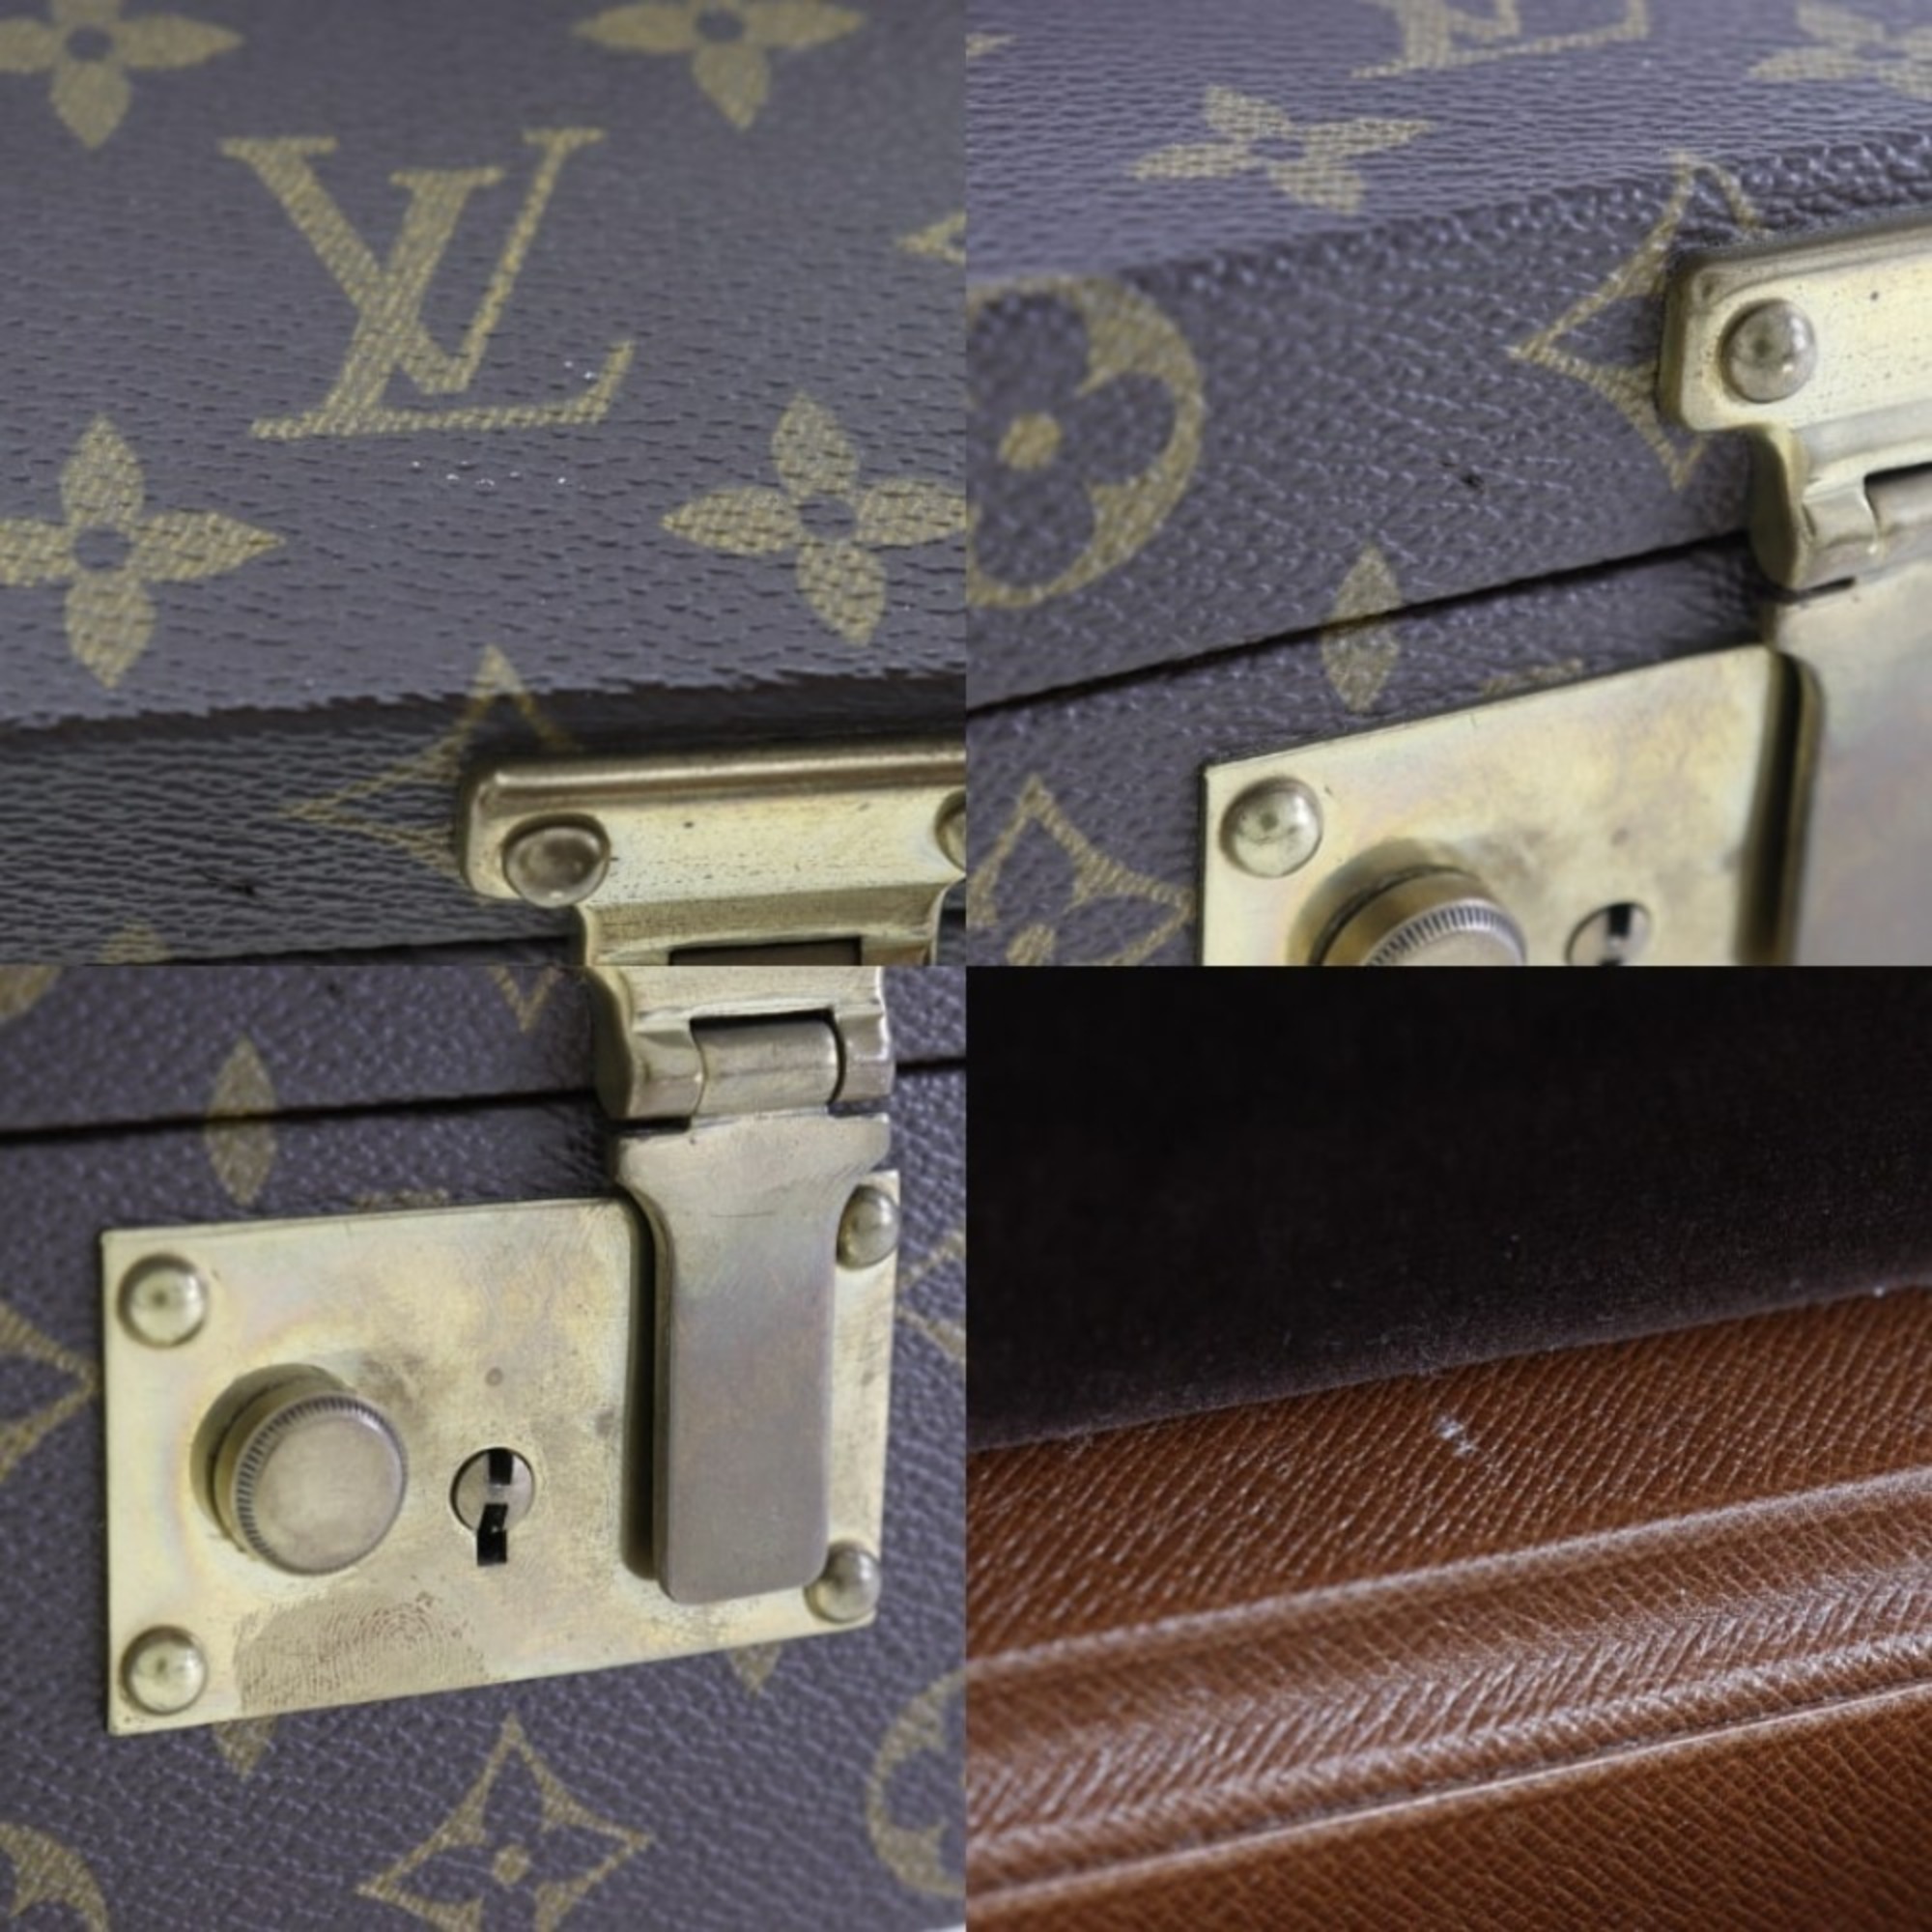 Louis Vuitton LOUIS VUITTON Boite Atou Case Monogram Canvas Snap Lock Bowat Unisex I131824070